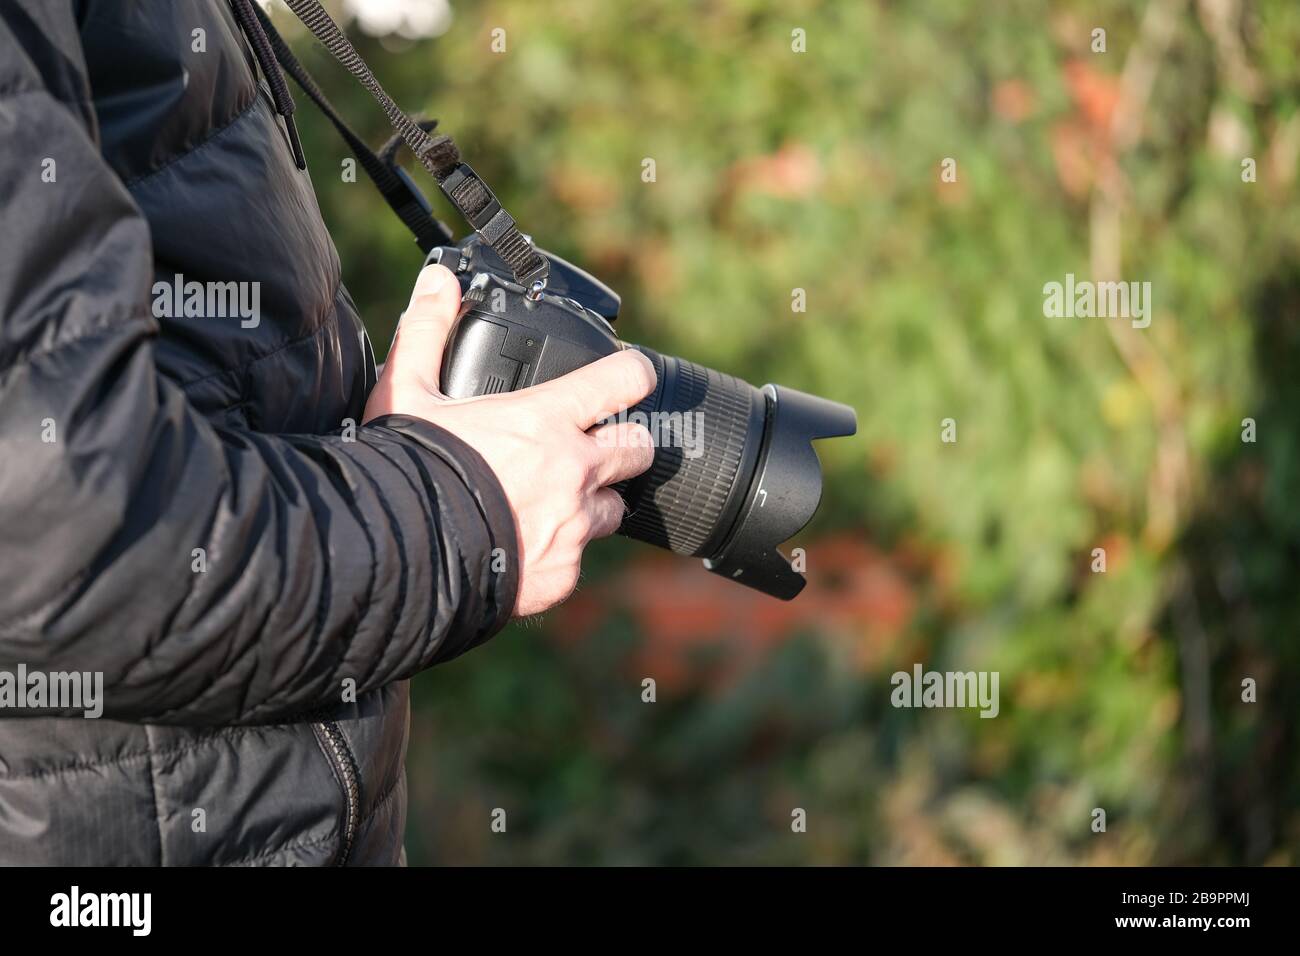 L'uomo fotografo con fotocamera dslr, all'aperto il giorno della primavera. Concetto hobby o fotografo professionista Foto Stock